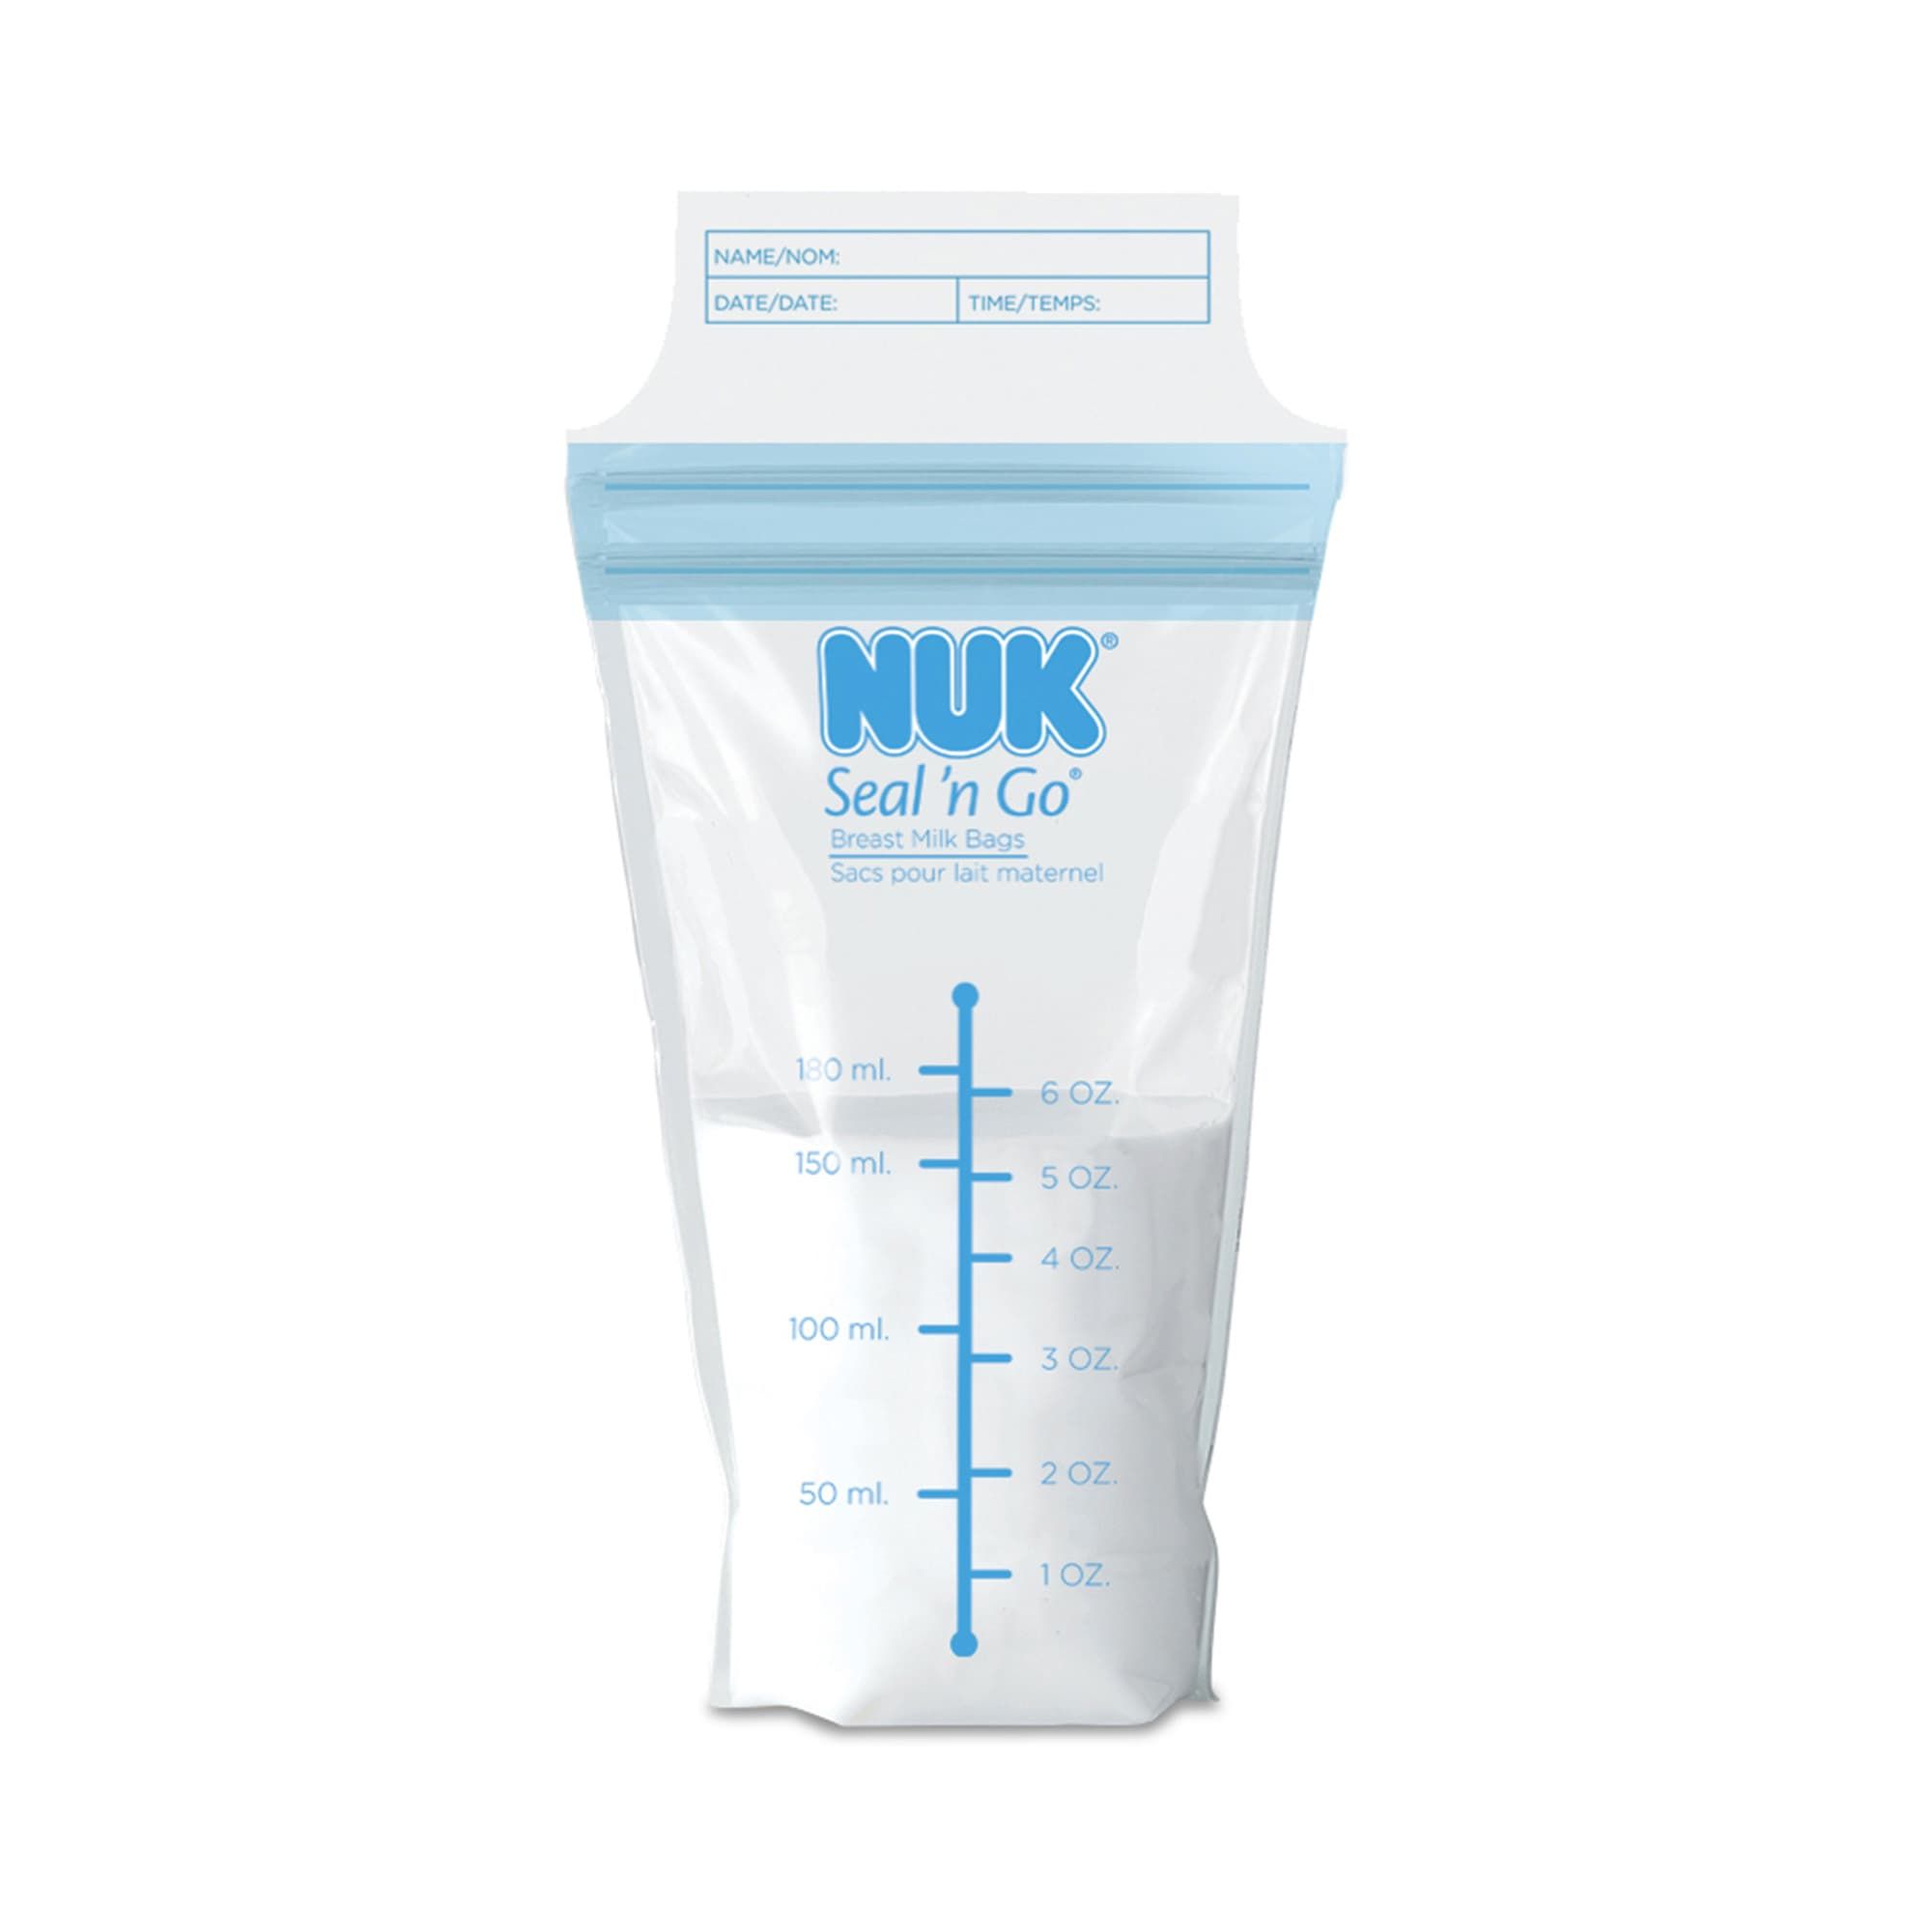 NUK Seal 'n Go Milk Storage Bags